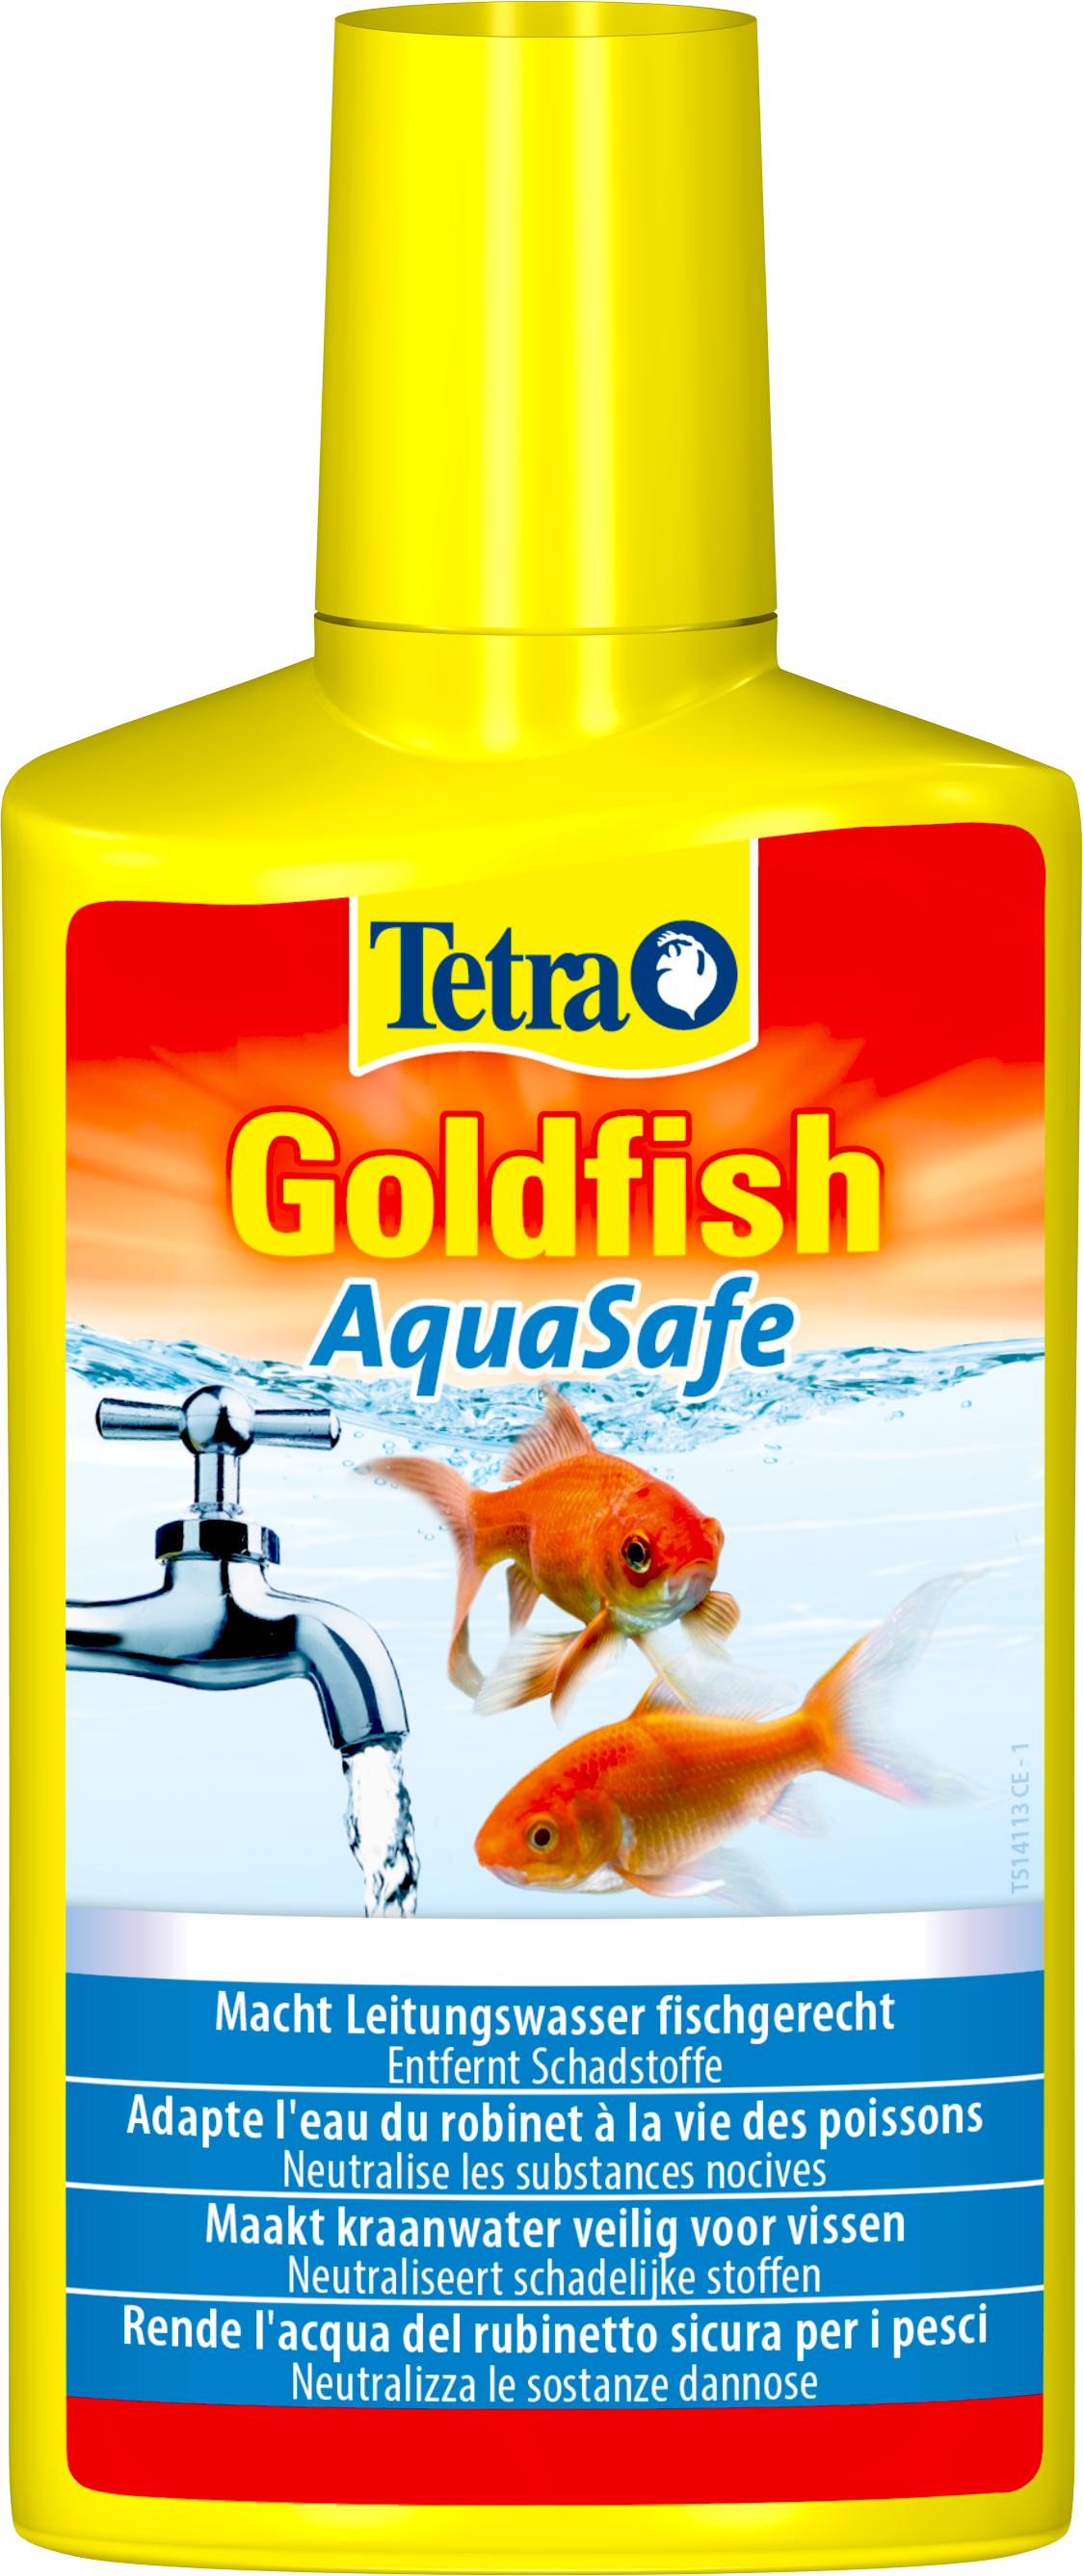 Tetra Goldfish AquaSafe: Tetra